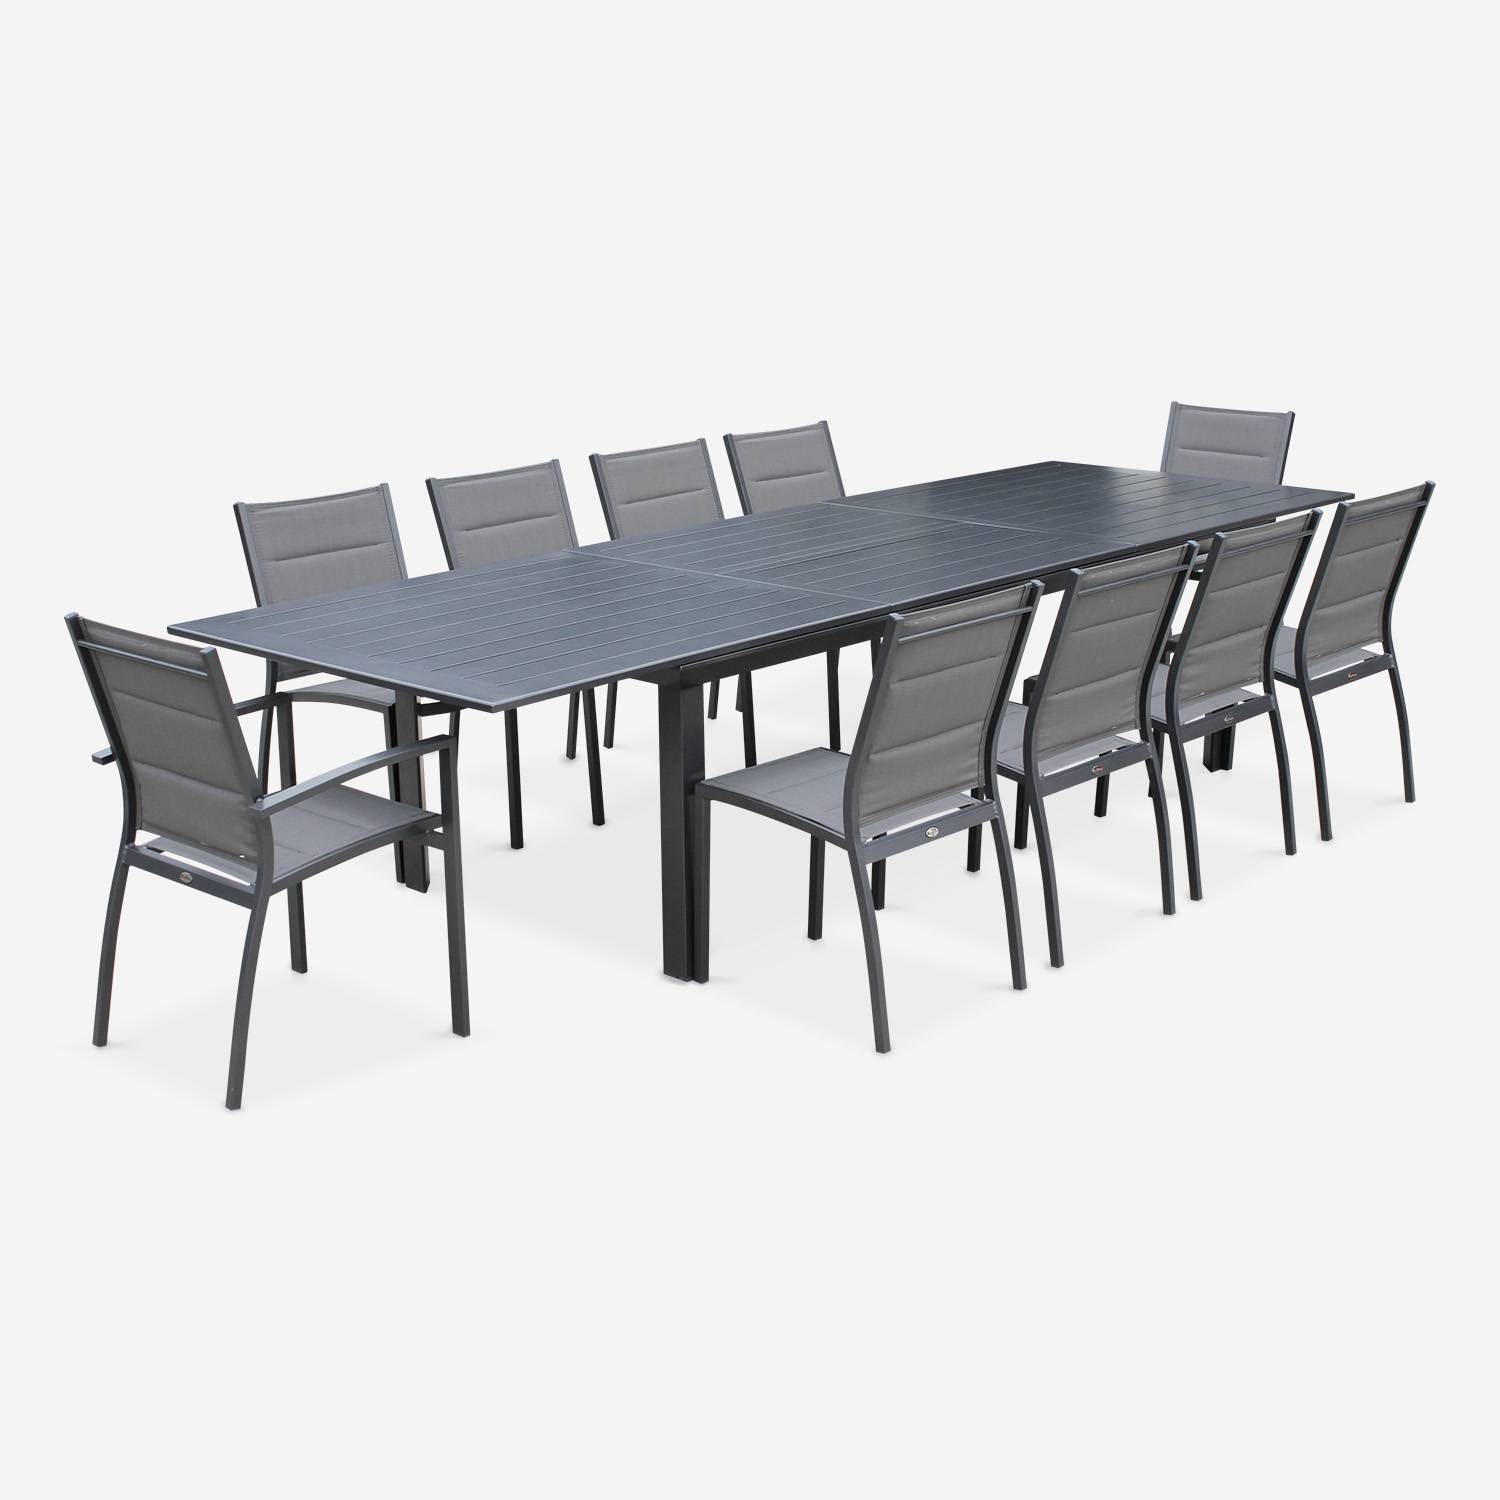 Ensemble Odenton, 1 table extensible, 2 fauteuils, 8 chaises en aluminium et textilène Photo2